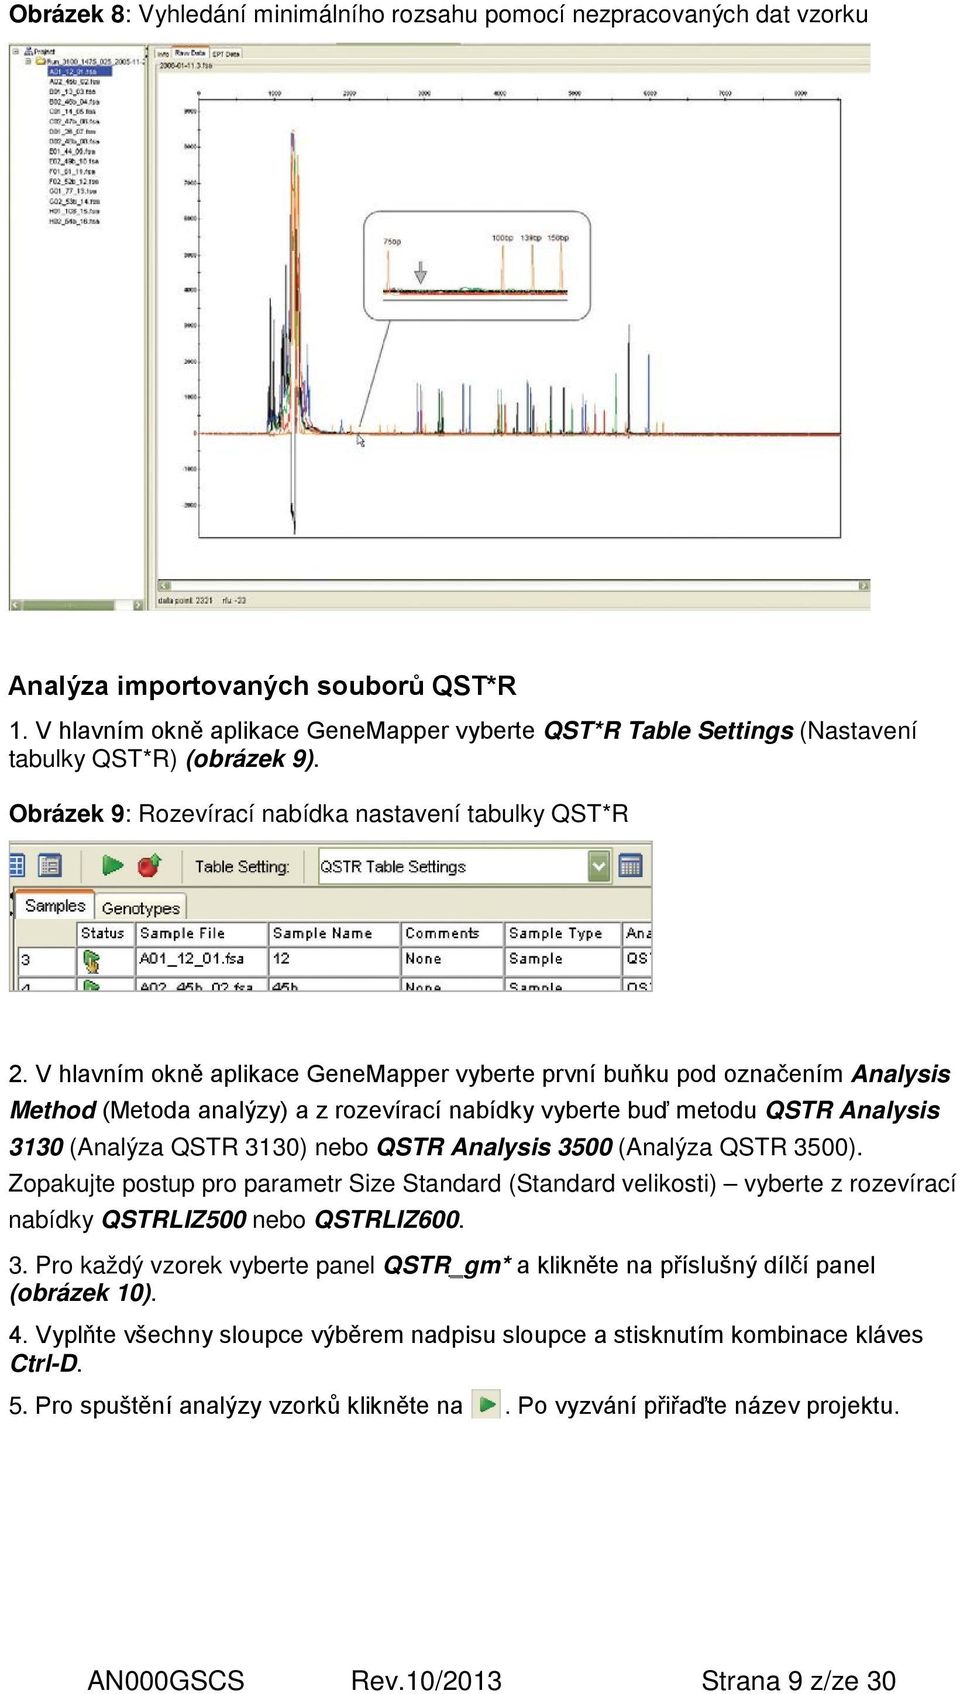 V hlavním okně aplikace GeneMapper vyberte první buňku pod označením Analysis Method (Metoda analýzy) a z rozevírací nabídky vyberte buď metodu QSTR Analysis 3130 (Analýza QSTR 3130) nebo QSTR